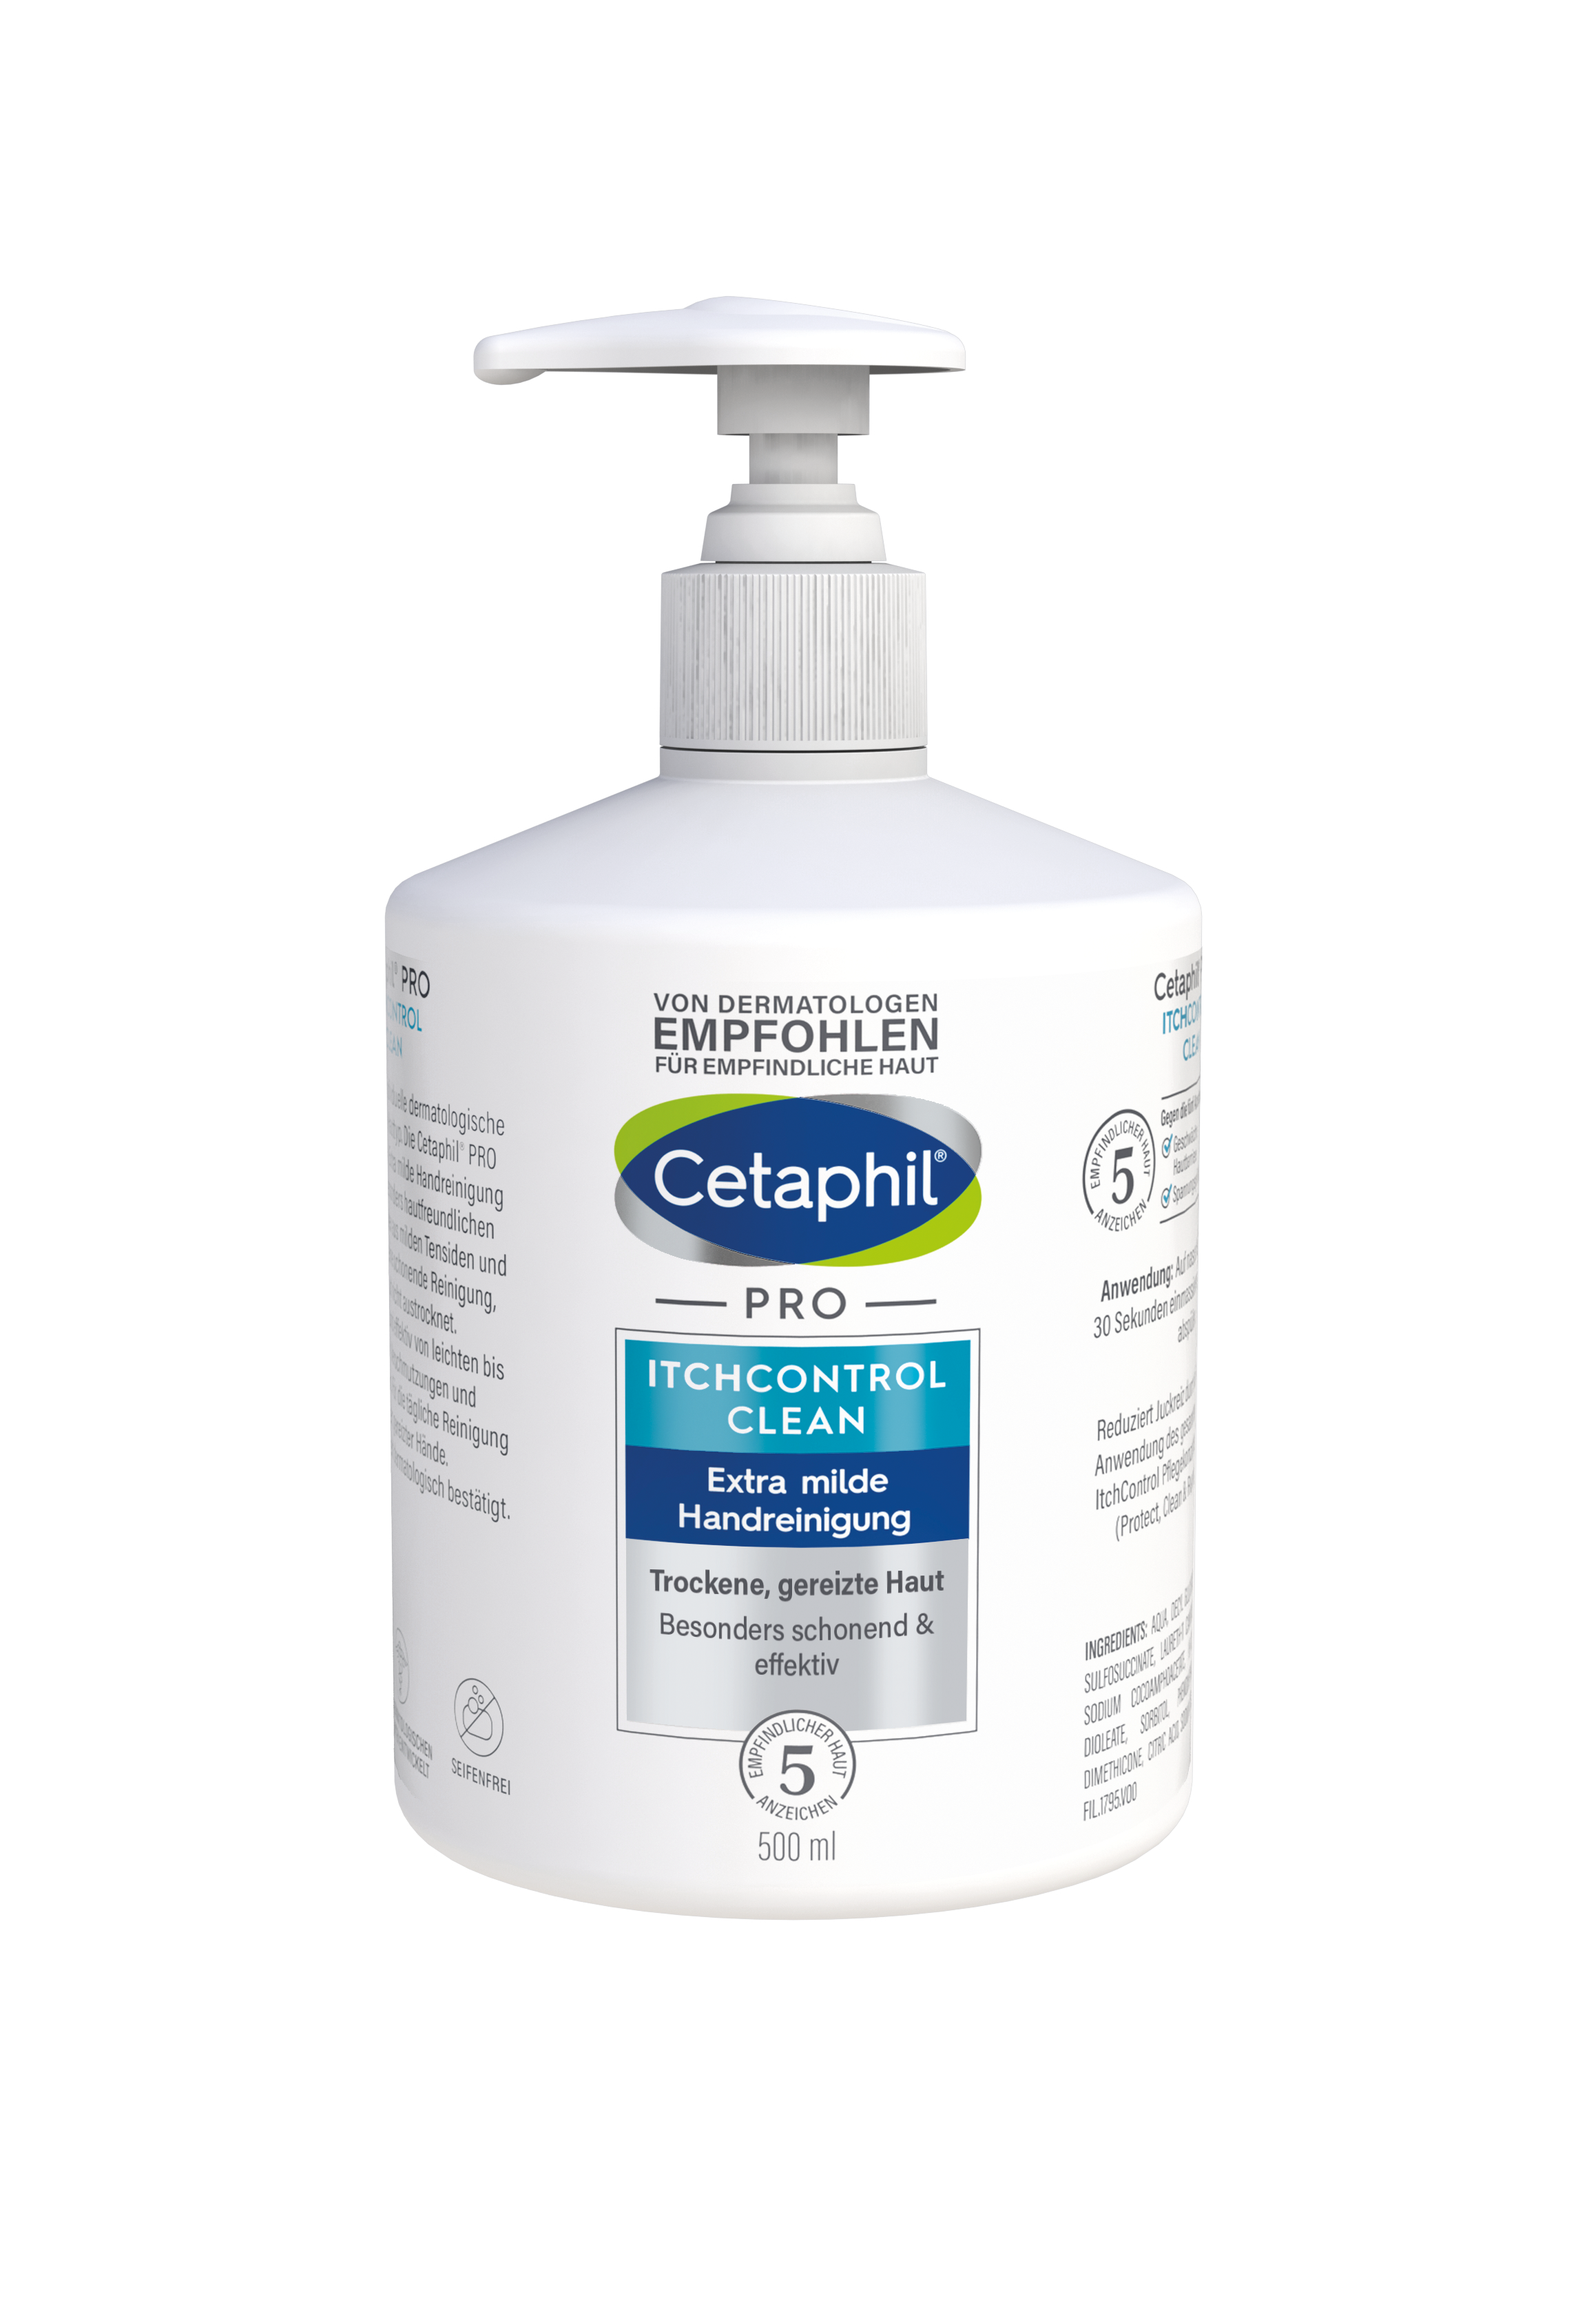 CETAPHIL Pro Itch Control Clean Handreinigung Cr.